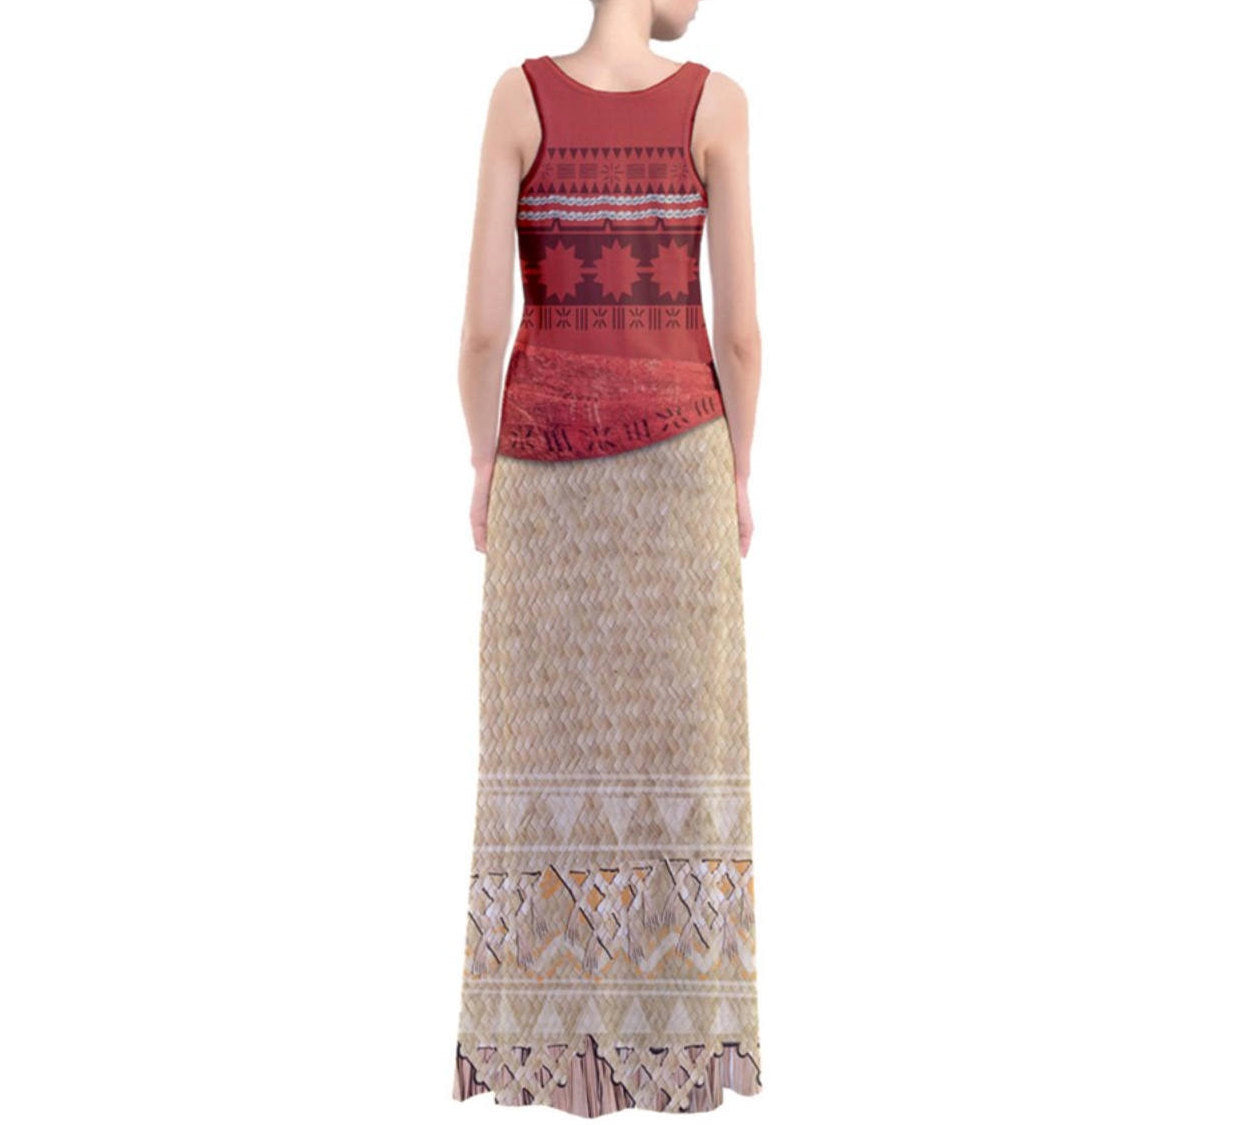 Moana Inspired Sleeveless Maxi Dress